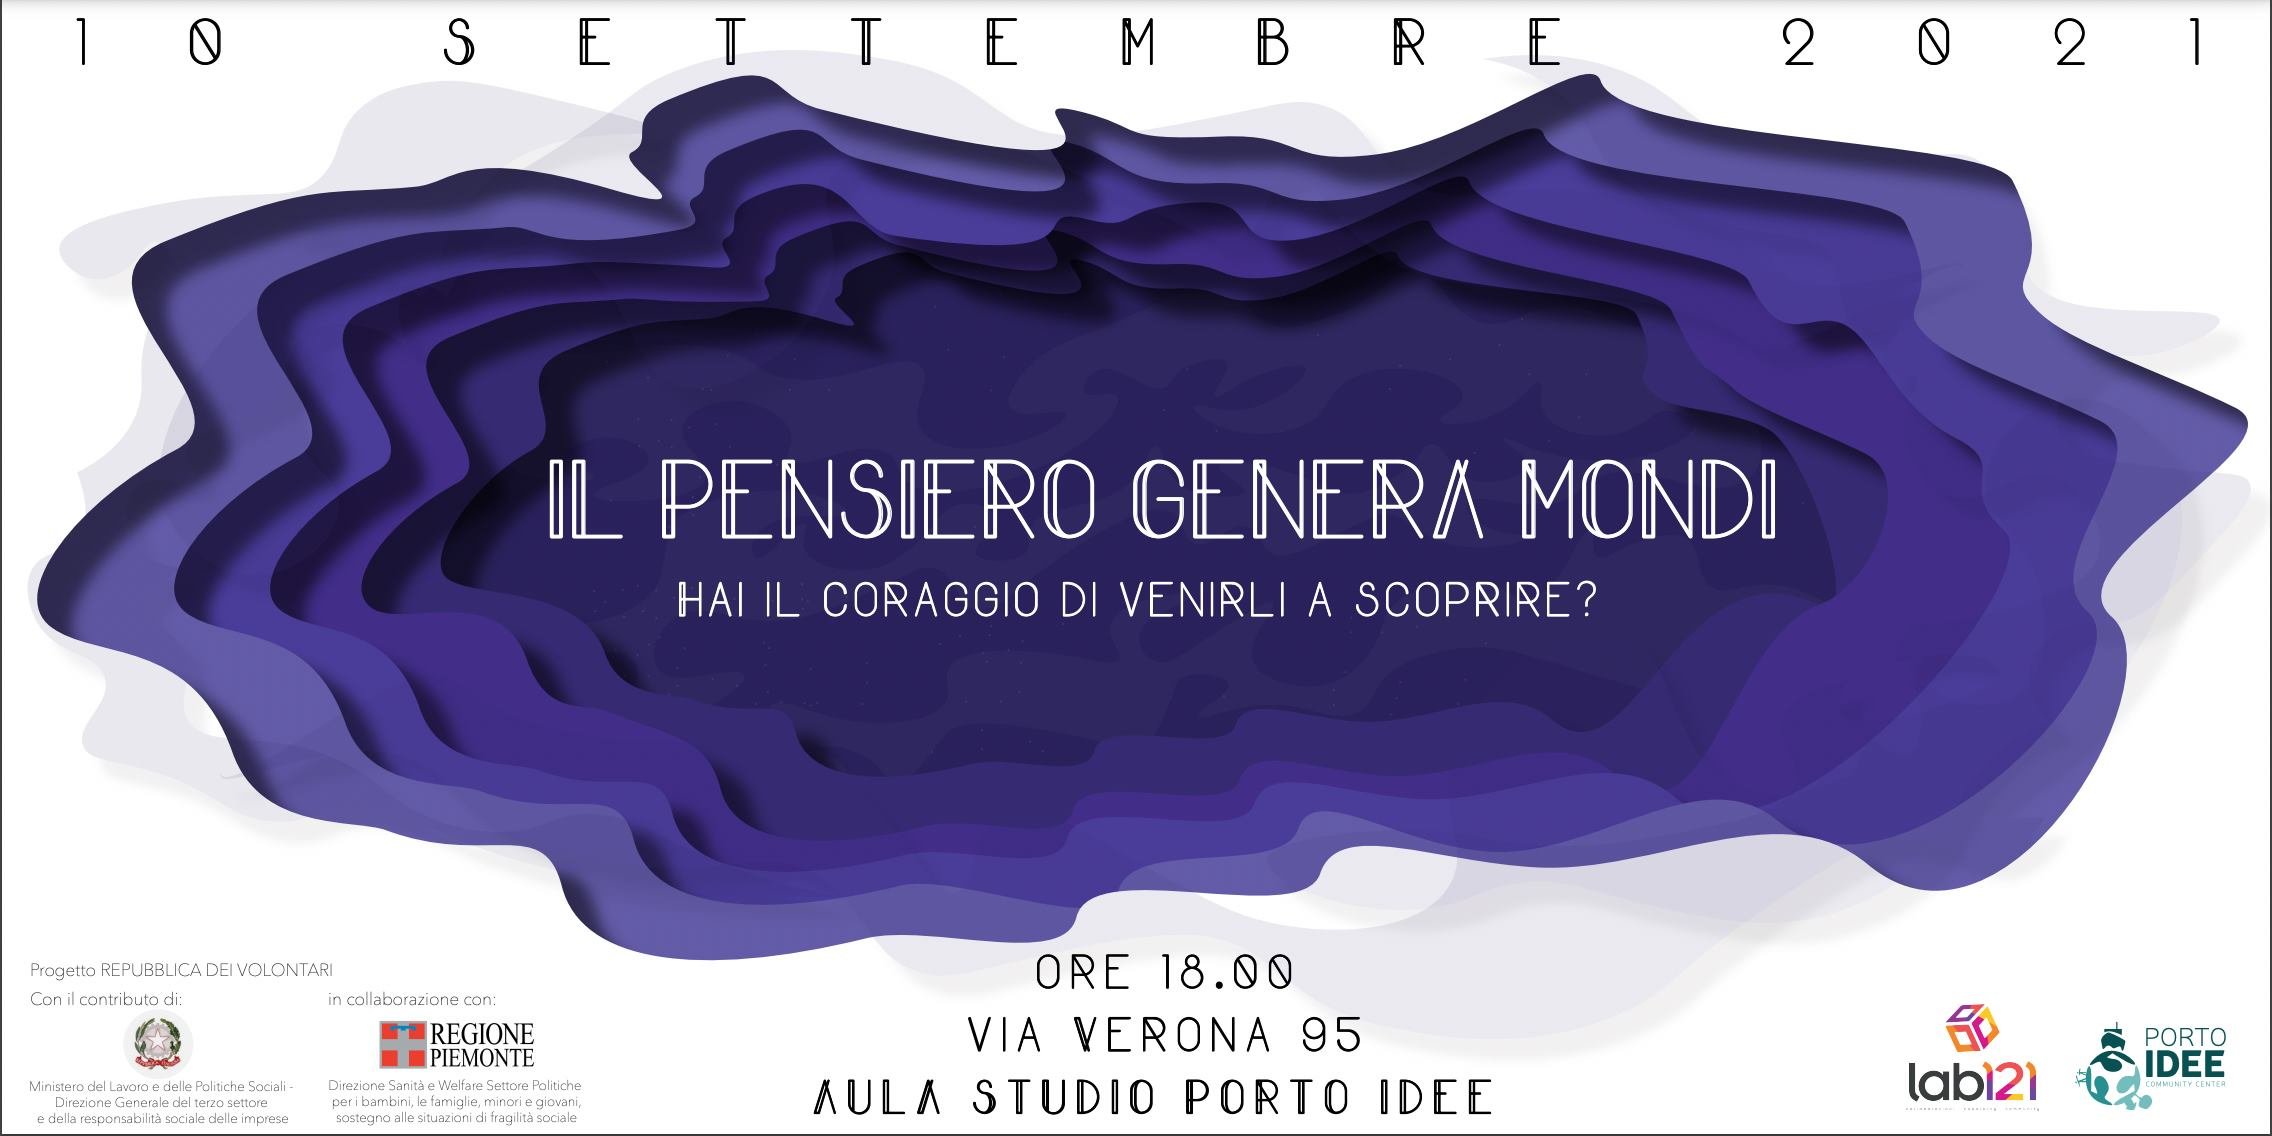 Il Pensiero Genera Mondi: ad Alessandria un evento tra arte, cultura e musica